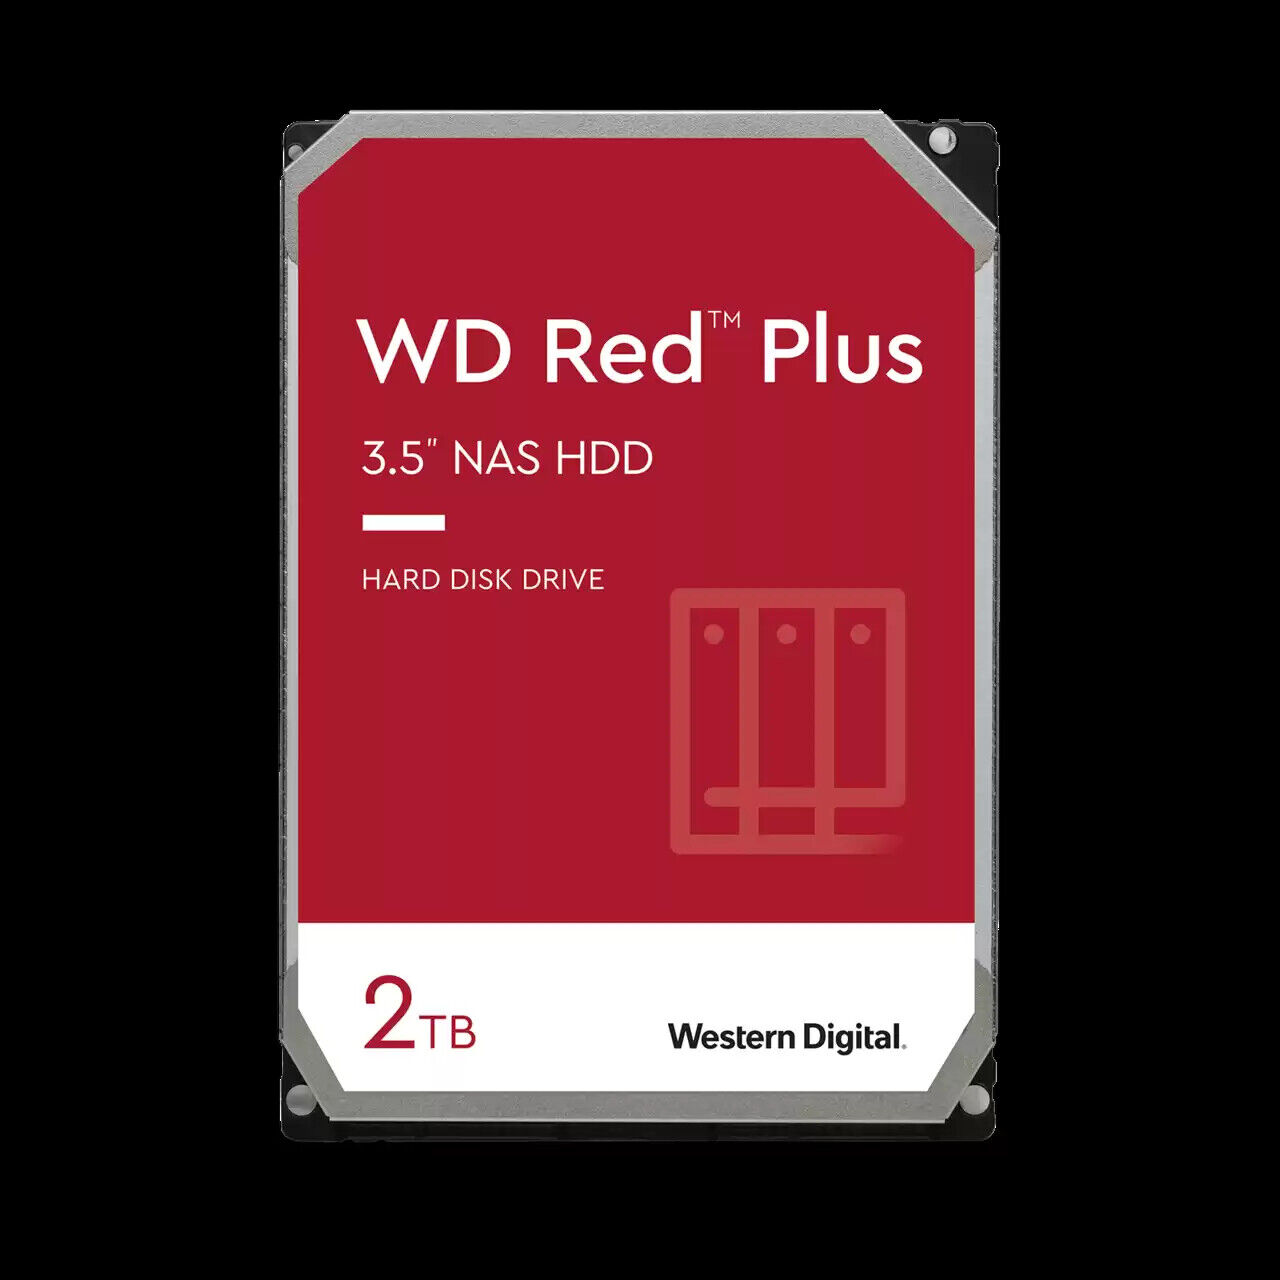 Western Digital 2TB WD Red Plus NAS HDD, Internal 3.5'' Hard Drive - WD20EFPX